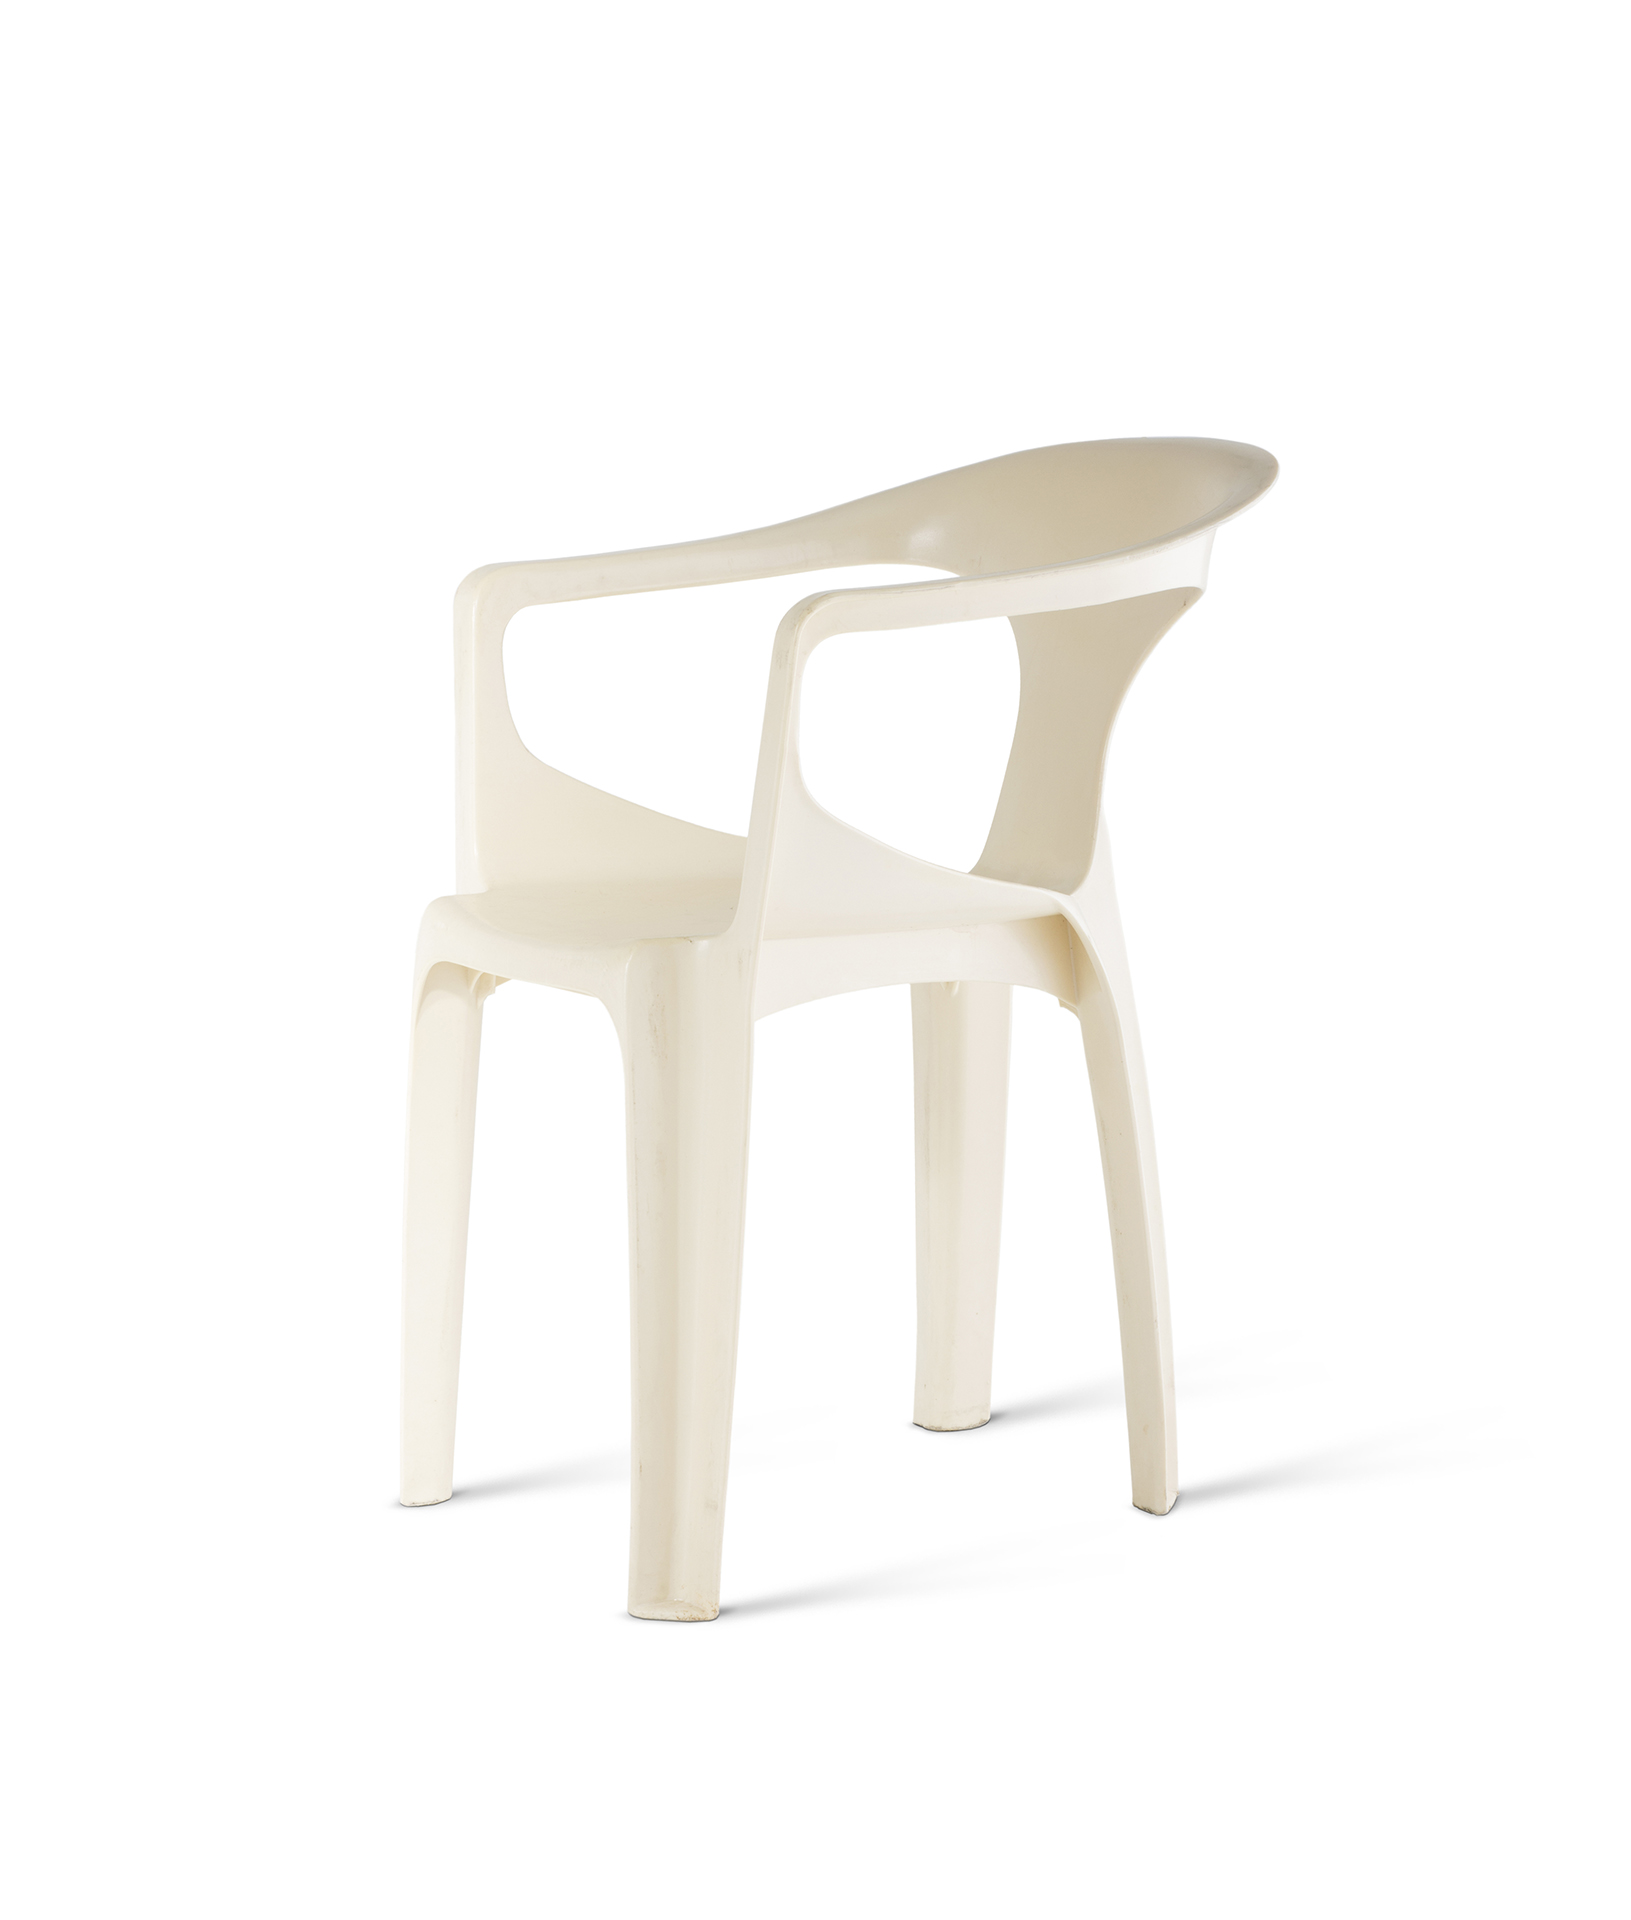 «Fauteuil 300»: Zwei Minuten dauert die Herstellung dieses Stuhls, entworfen vom französischen Ingenieur Henry Massonnet.